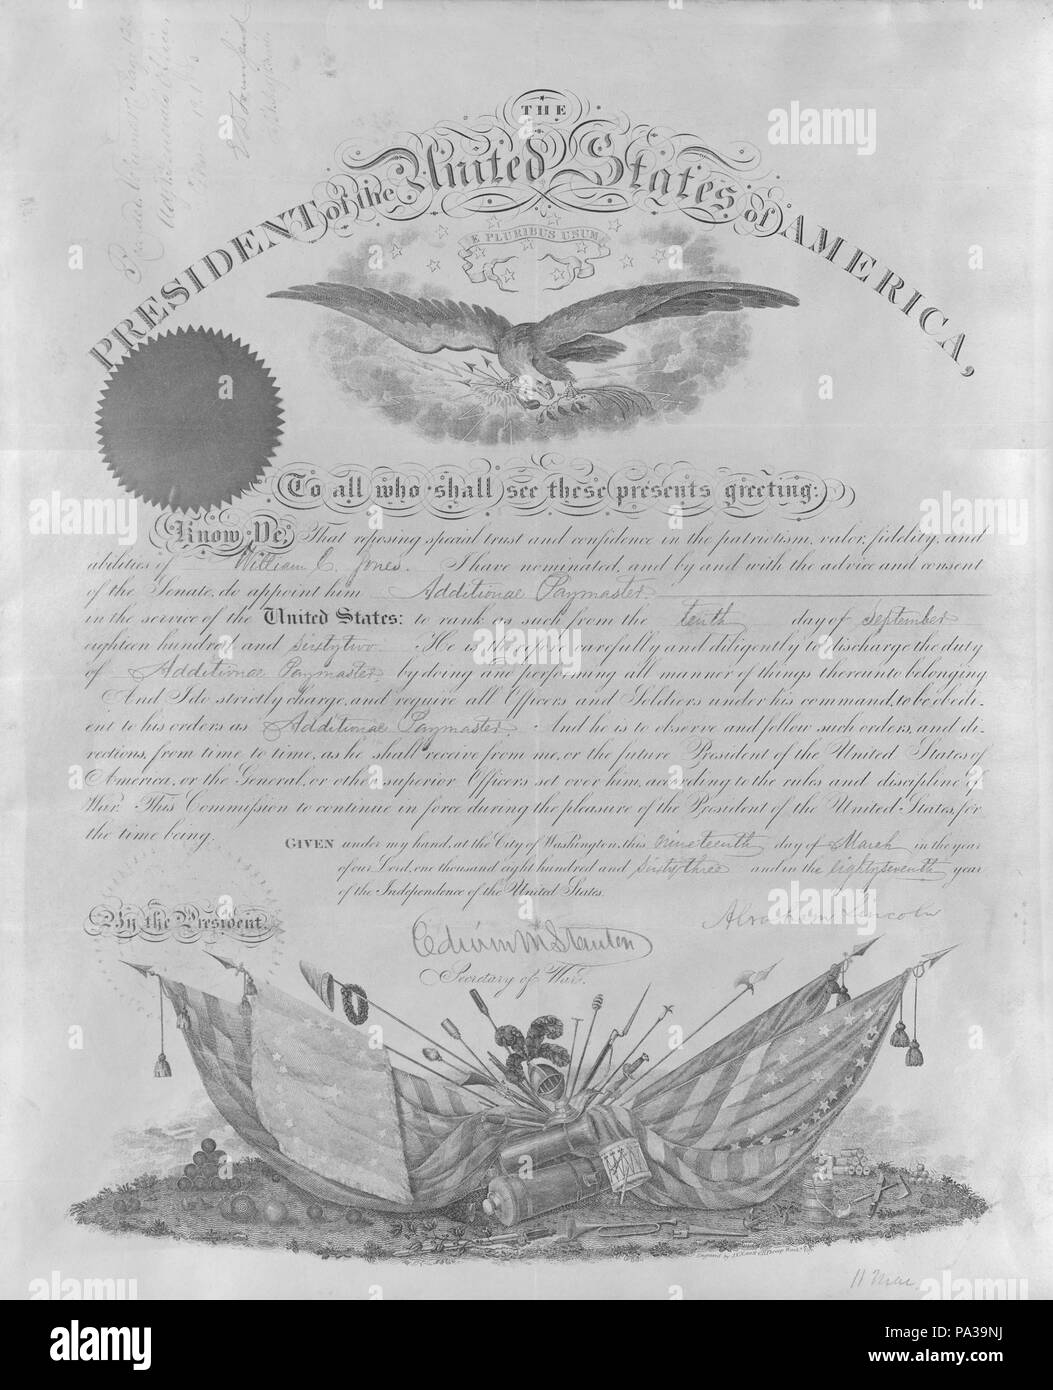 340 Kommission der William C. Jones aus der Präsident der Vereinigten Staaten von Amerika, 19. März 1863 Stockfoto